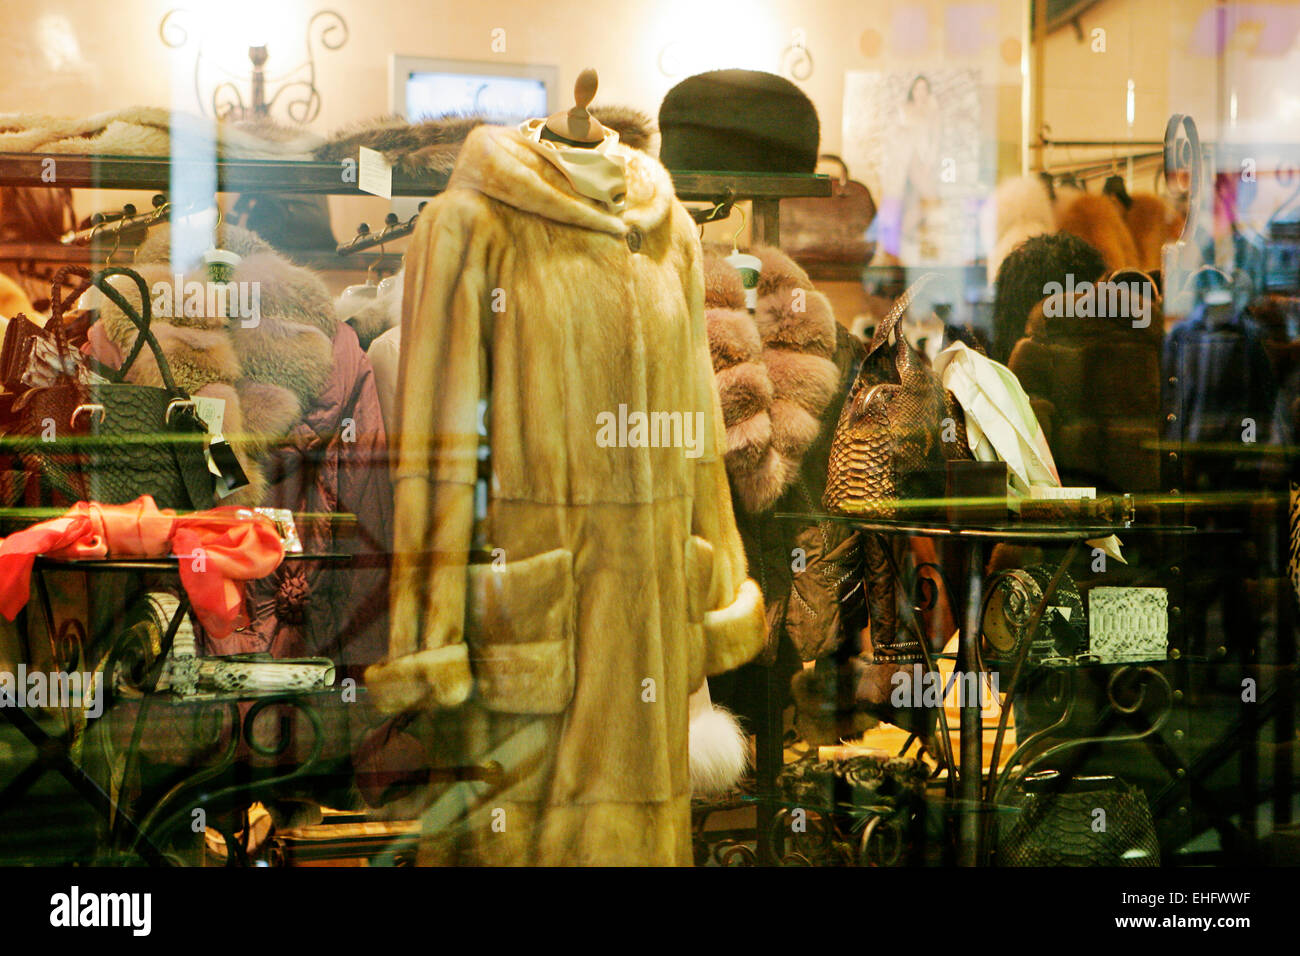 Los abrigos de pieles para la venta en los escaparates en Plovdiv, Bulgaria. Foto de stock